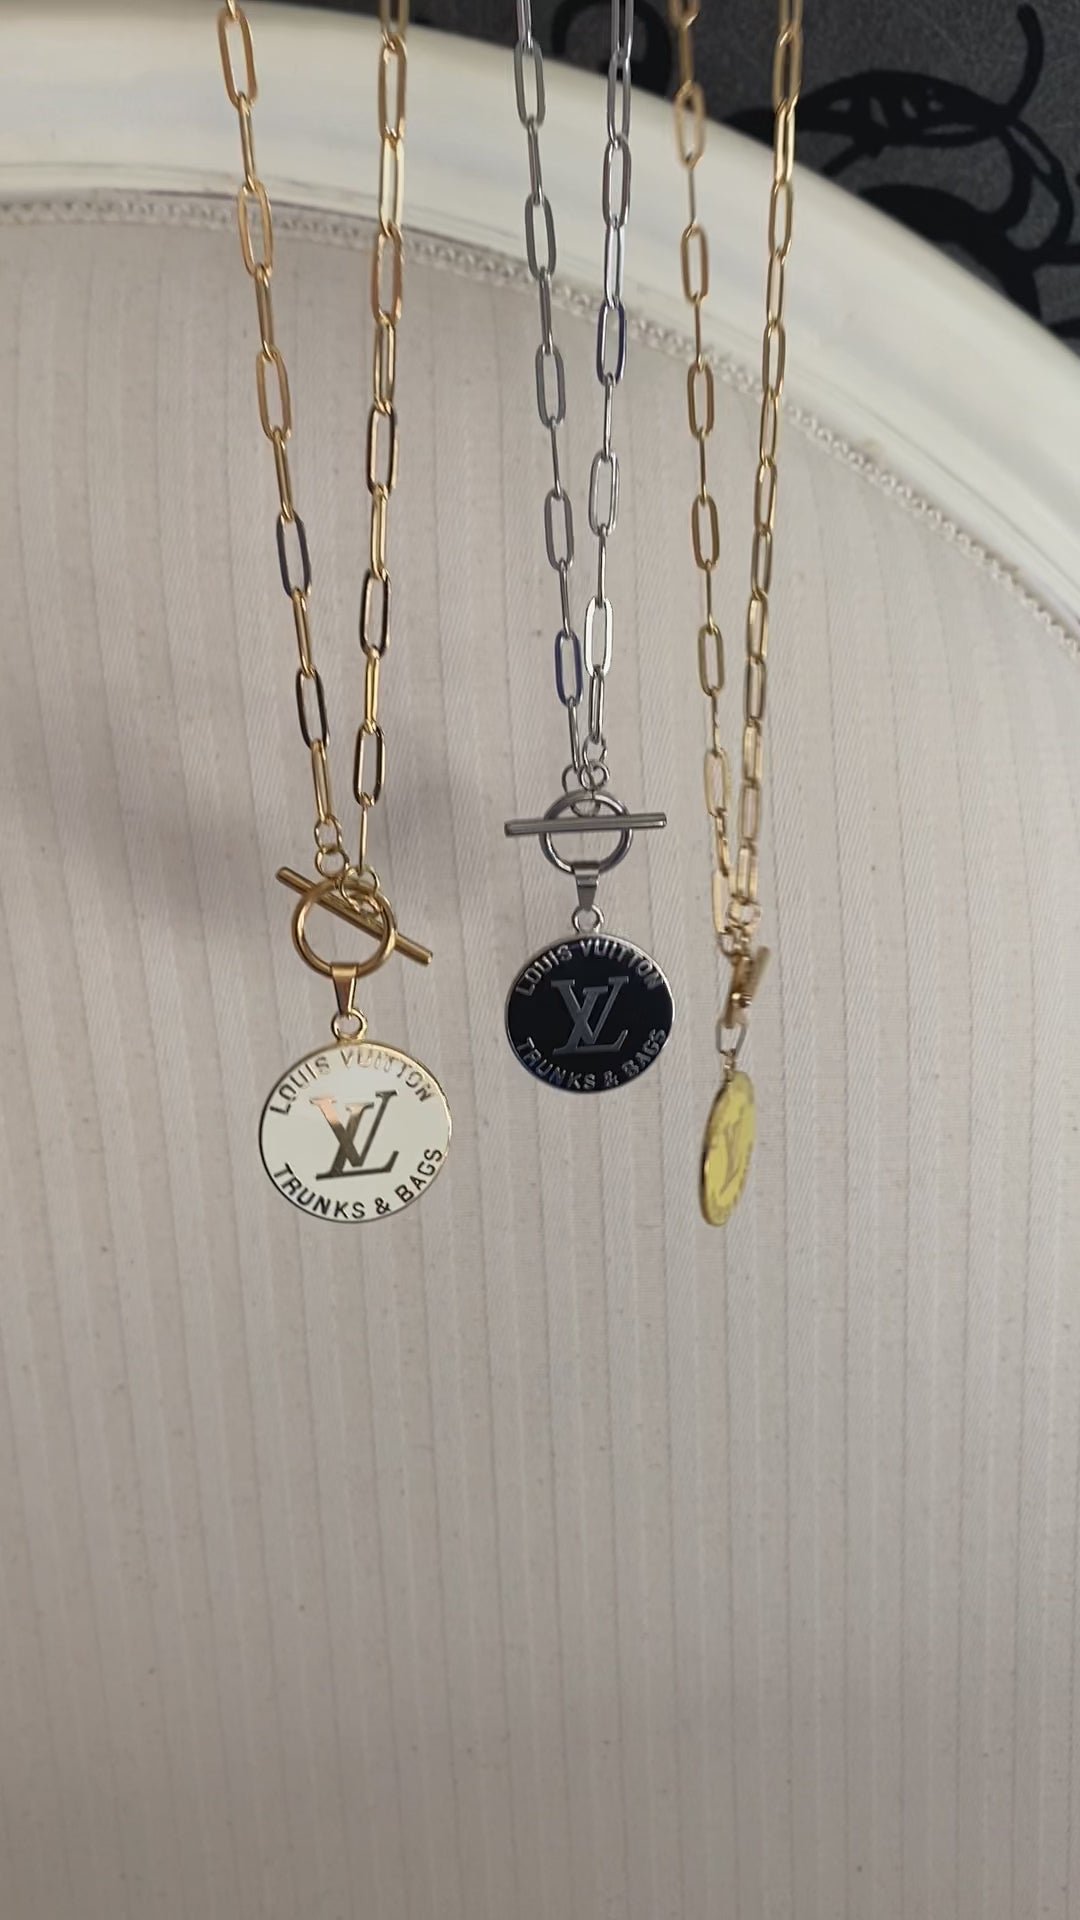 LOUIS VUITTON Trunks & Bags vintage pendant reworked necklace